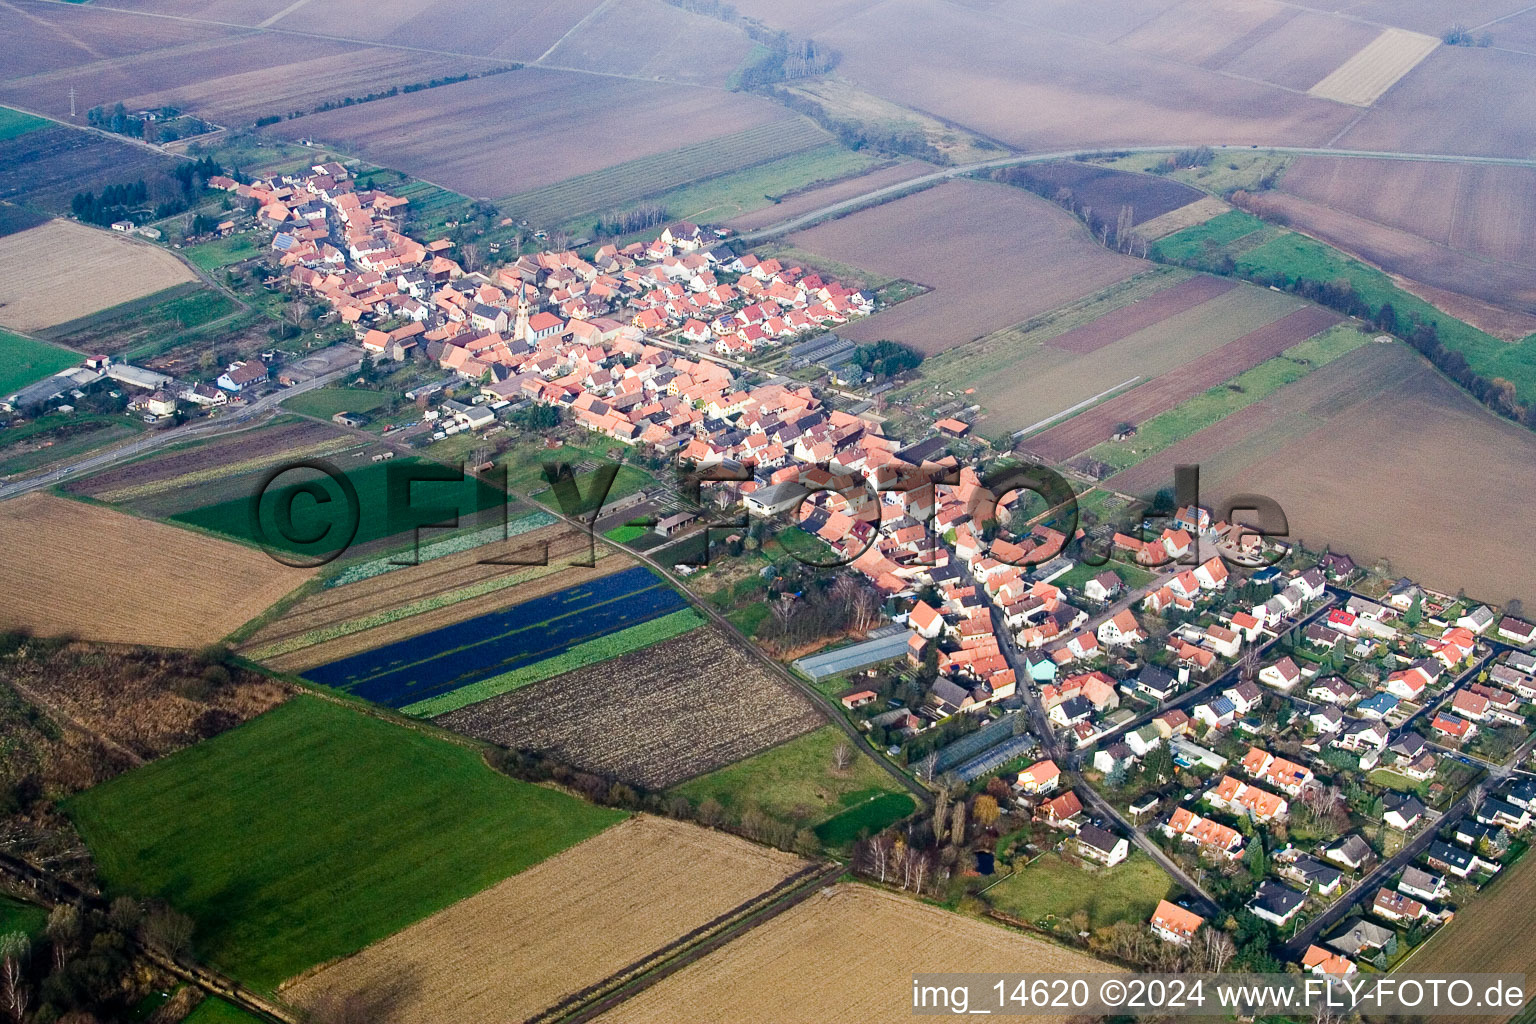 Luftbild von Dorf - Ansicht am Rande von landwirtschaftlichen Feldern und Nutzflächen im Ortsteil Gewerbegebiet Horst in Erlenbach bei Kandel im Bundesland Rheinland-Pfalz, Deutschland